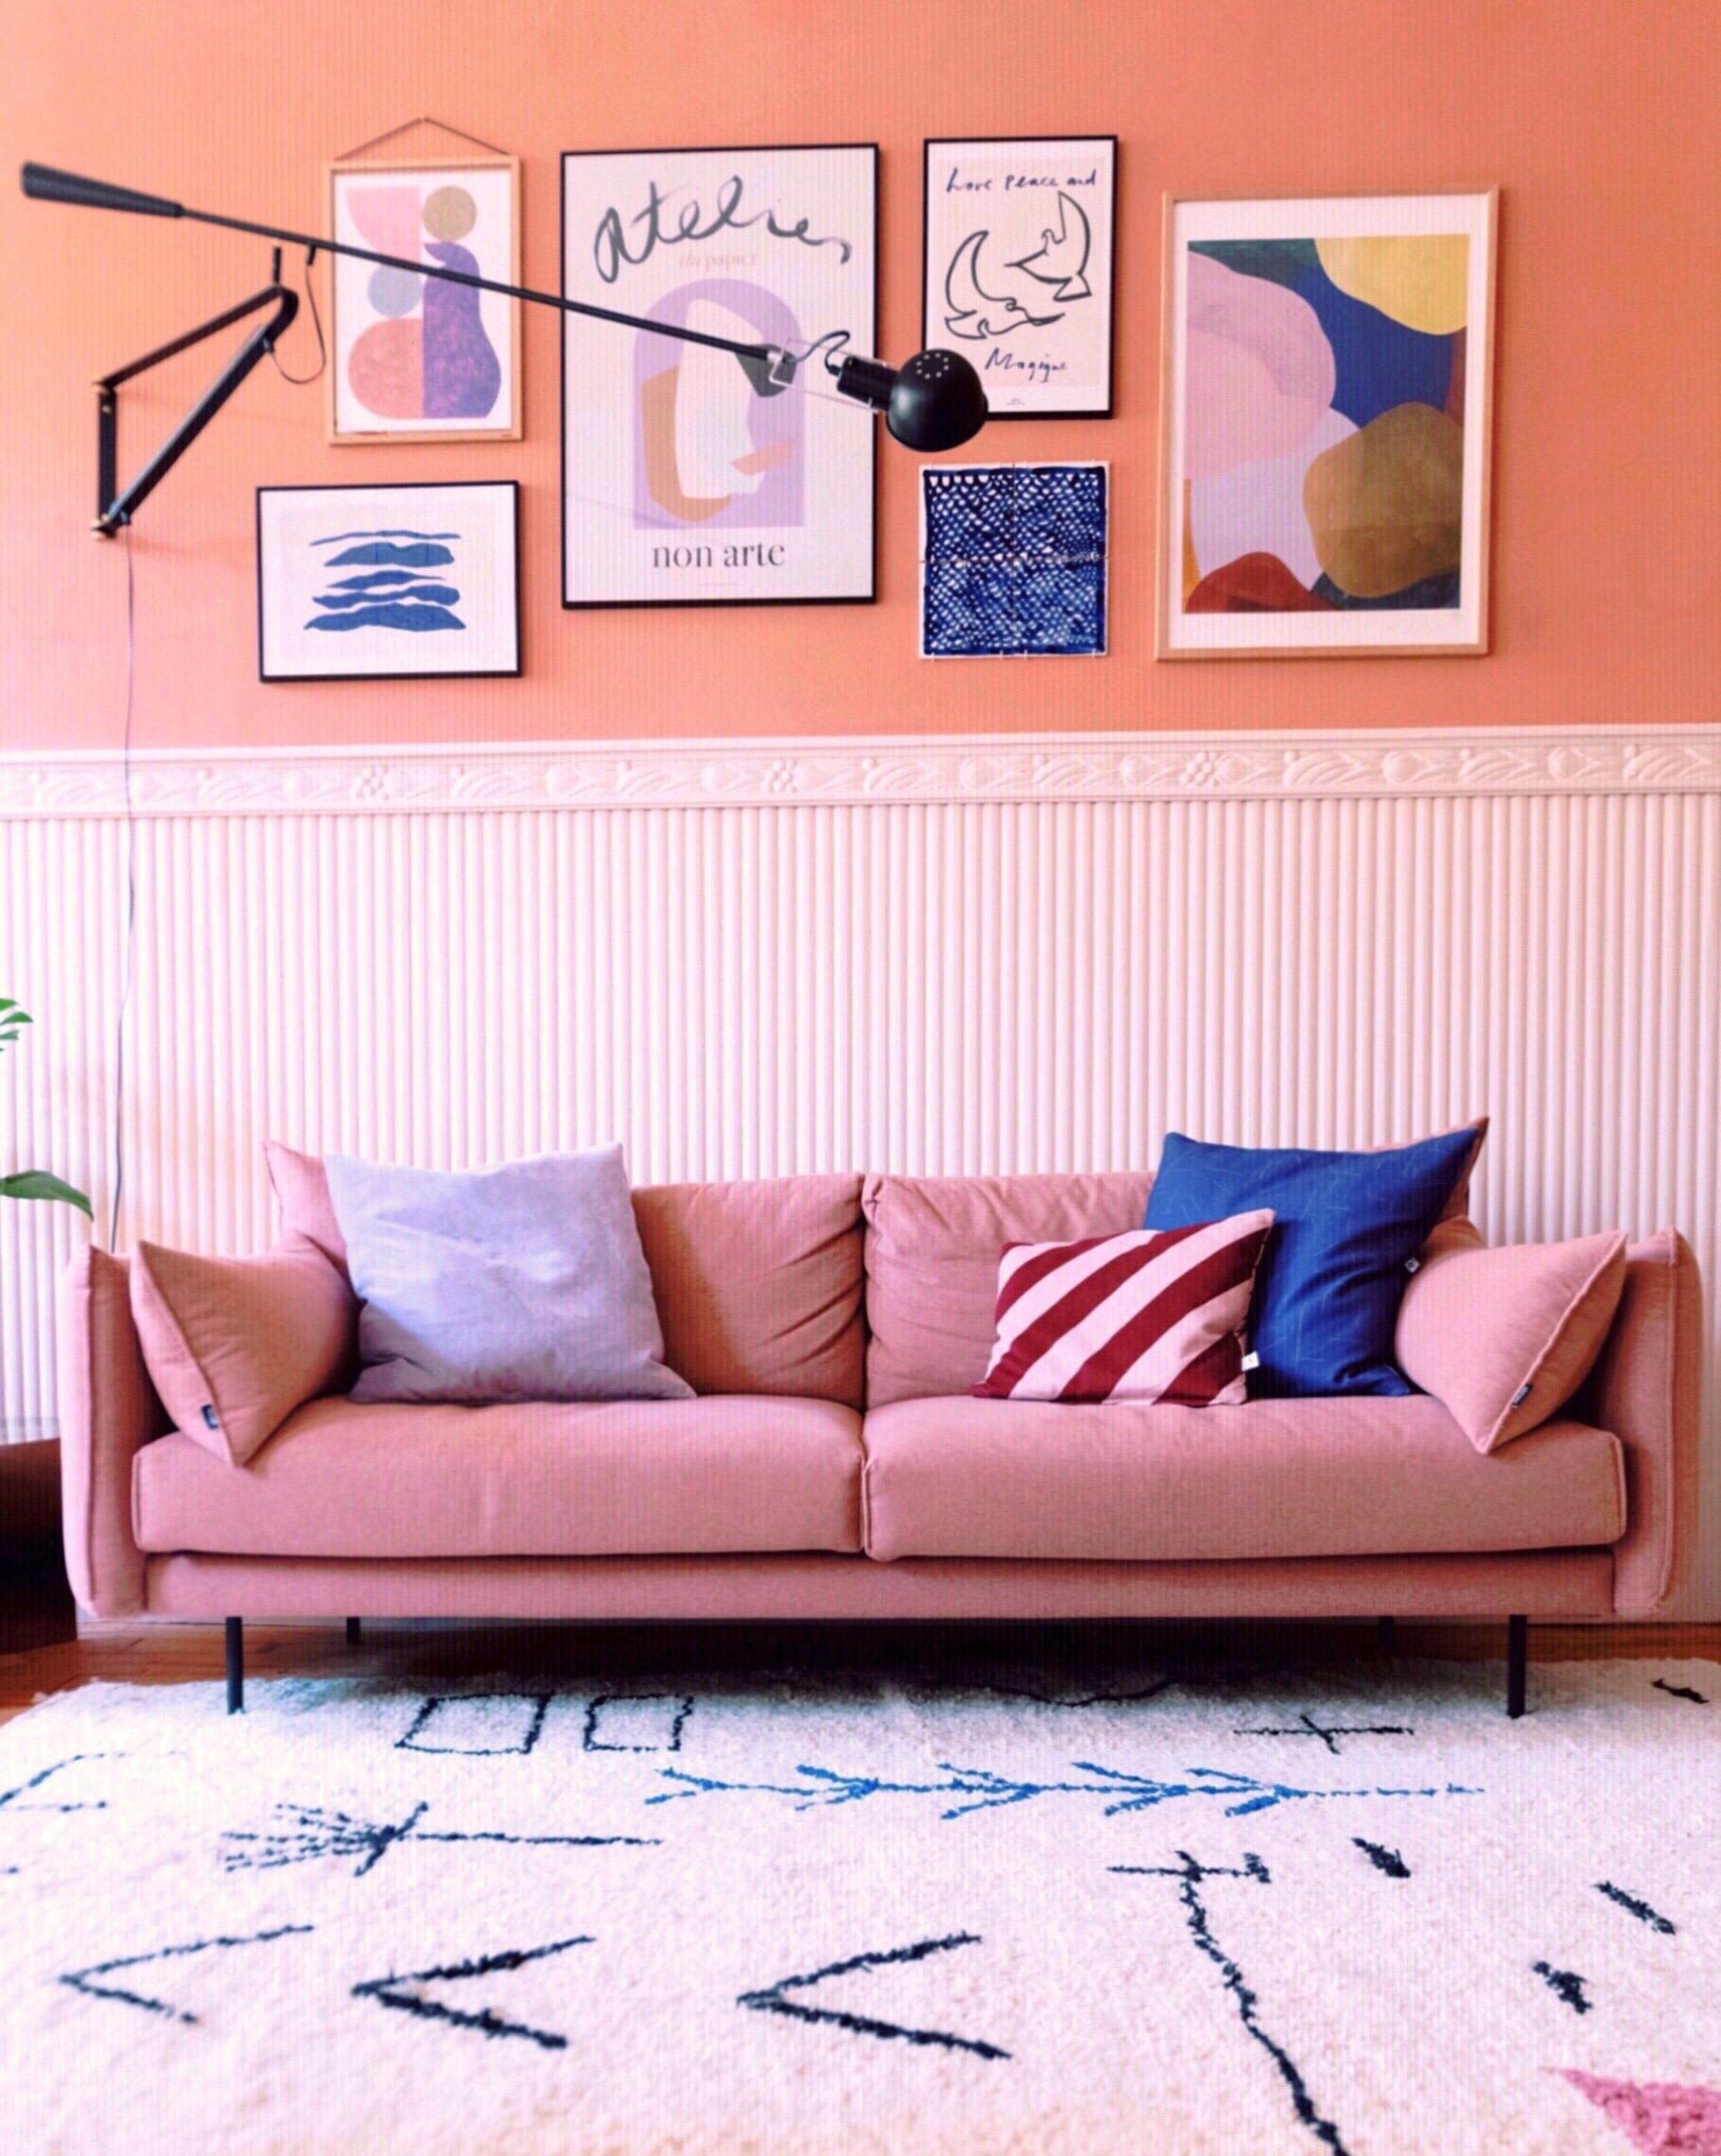 Nimm doch Platz...💕
#sofa #livingroominspo #posterwall